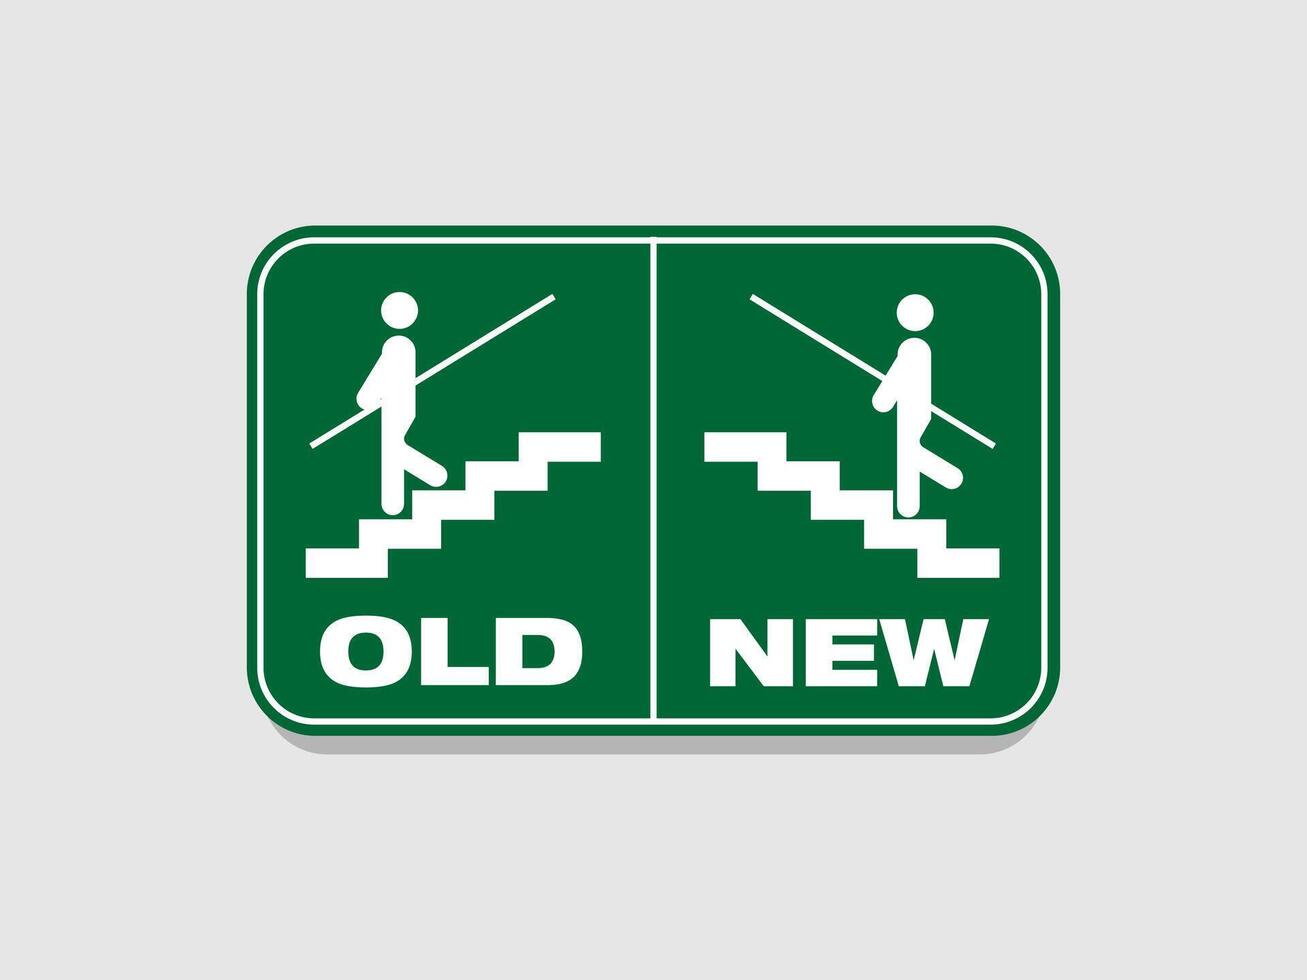 ir acima e baixa escadas ícone estrada sinais representando a Novo e a velho caminho, vetor ilustração usar nos para positivo pensamentos o negócio ou marketing e publicidade